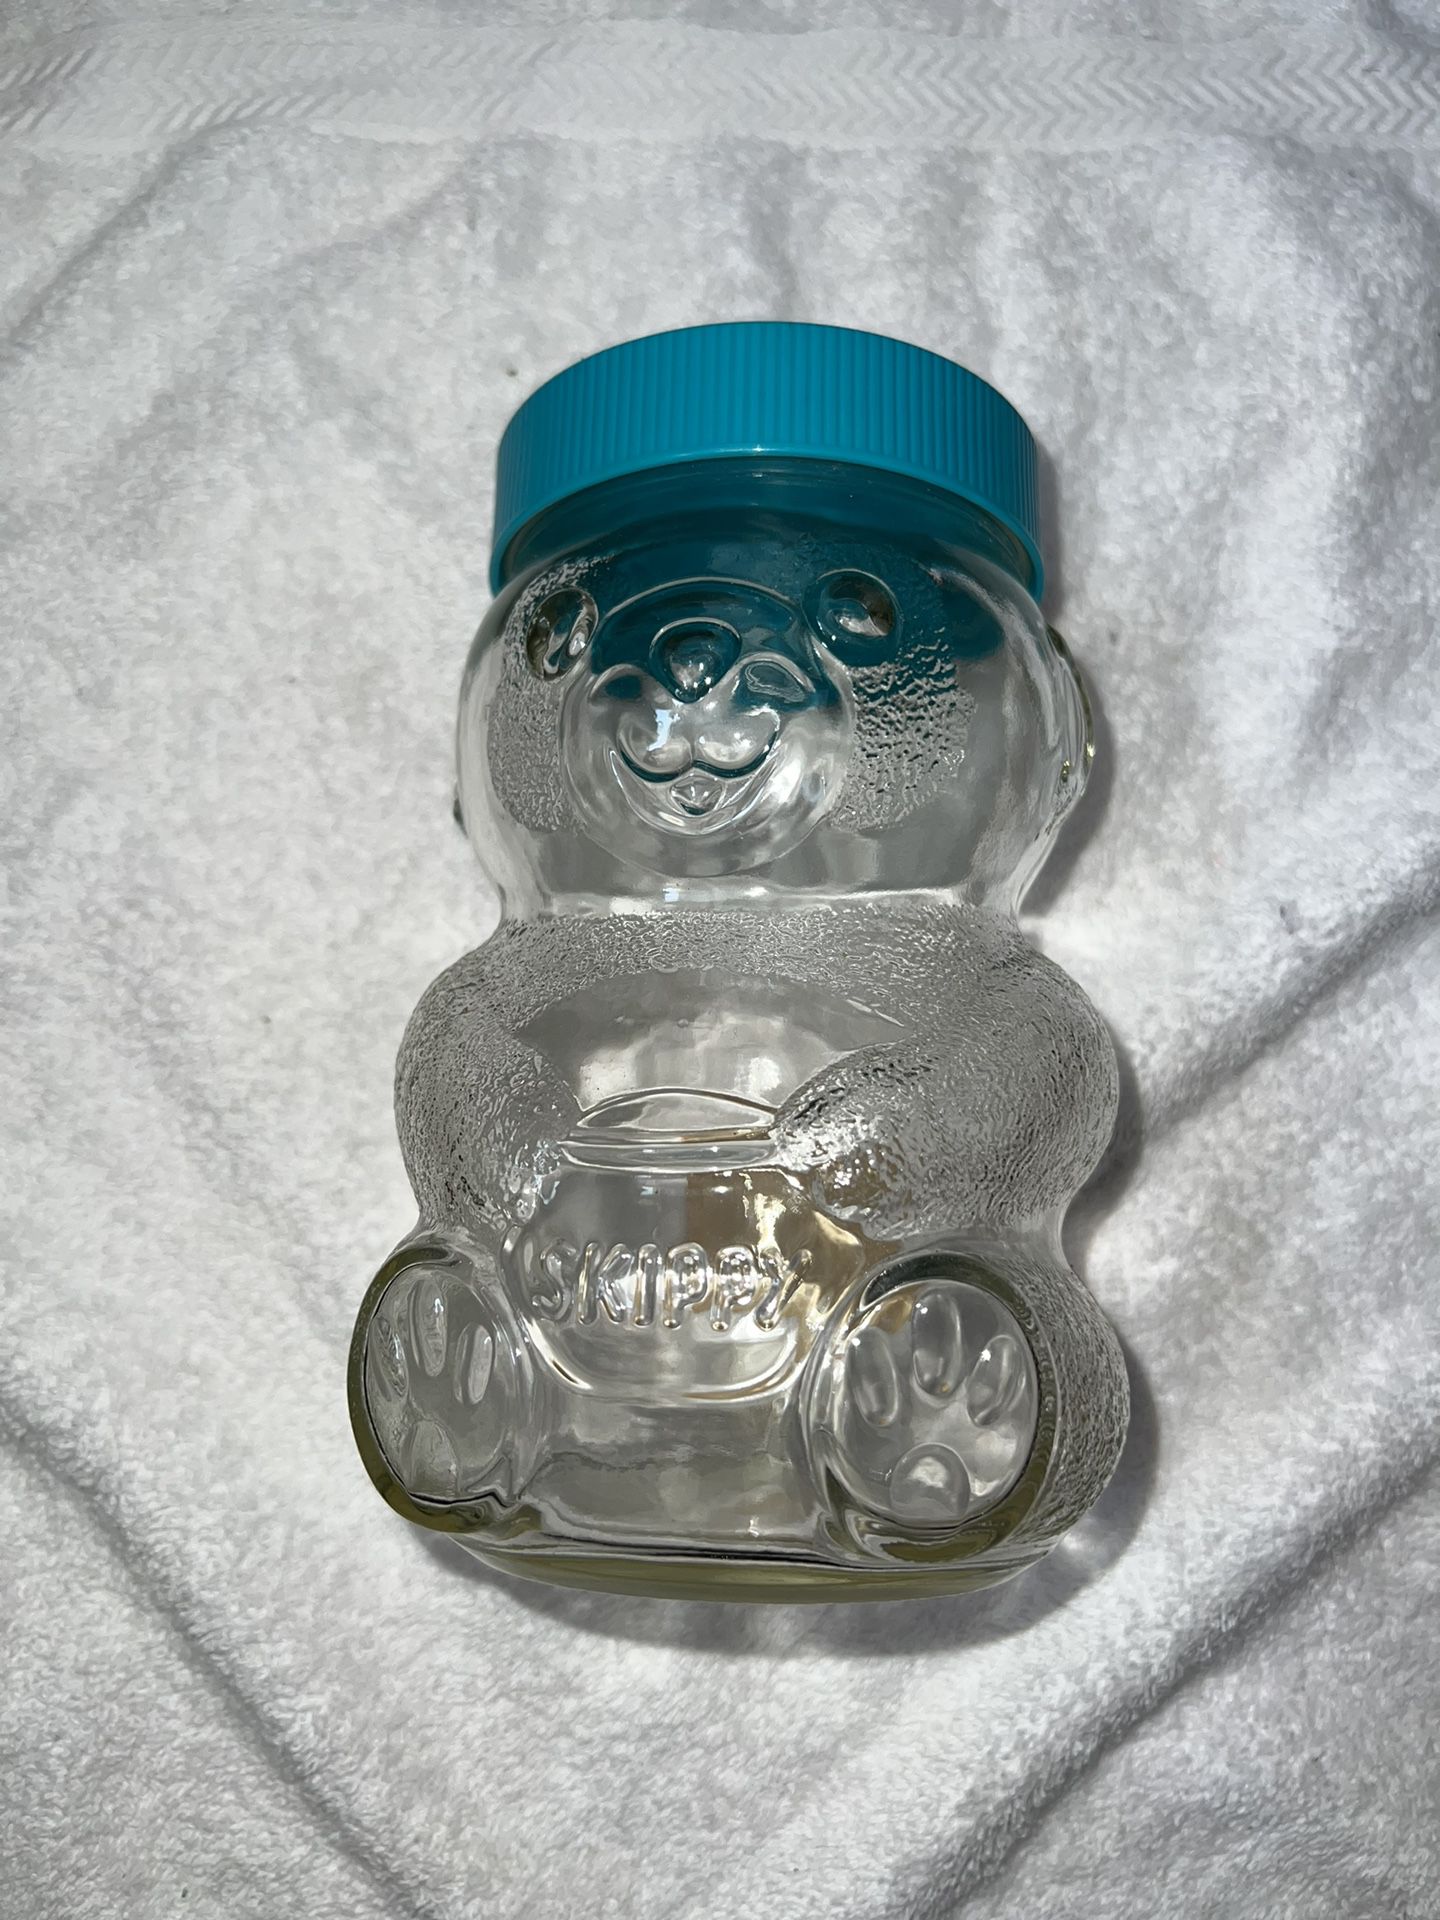 Skippy’s Peanut Butter Glass Bear Jar Vintage 1990s 7.5” Tall 48 oz